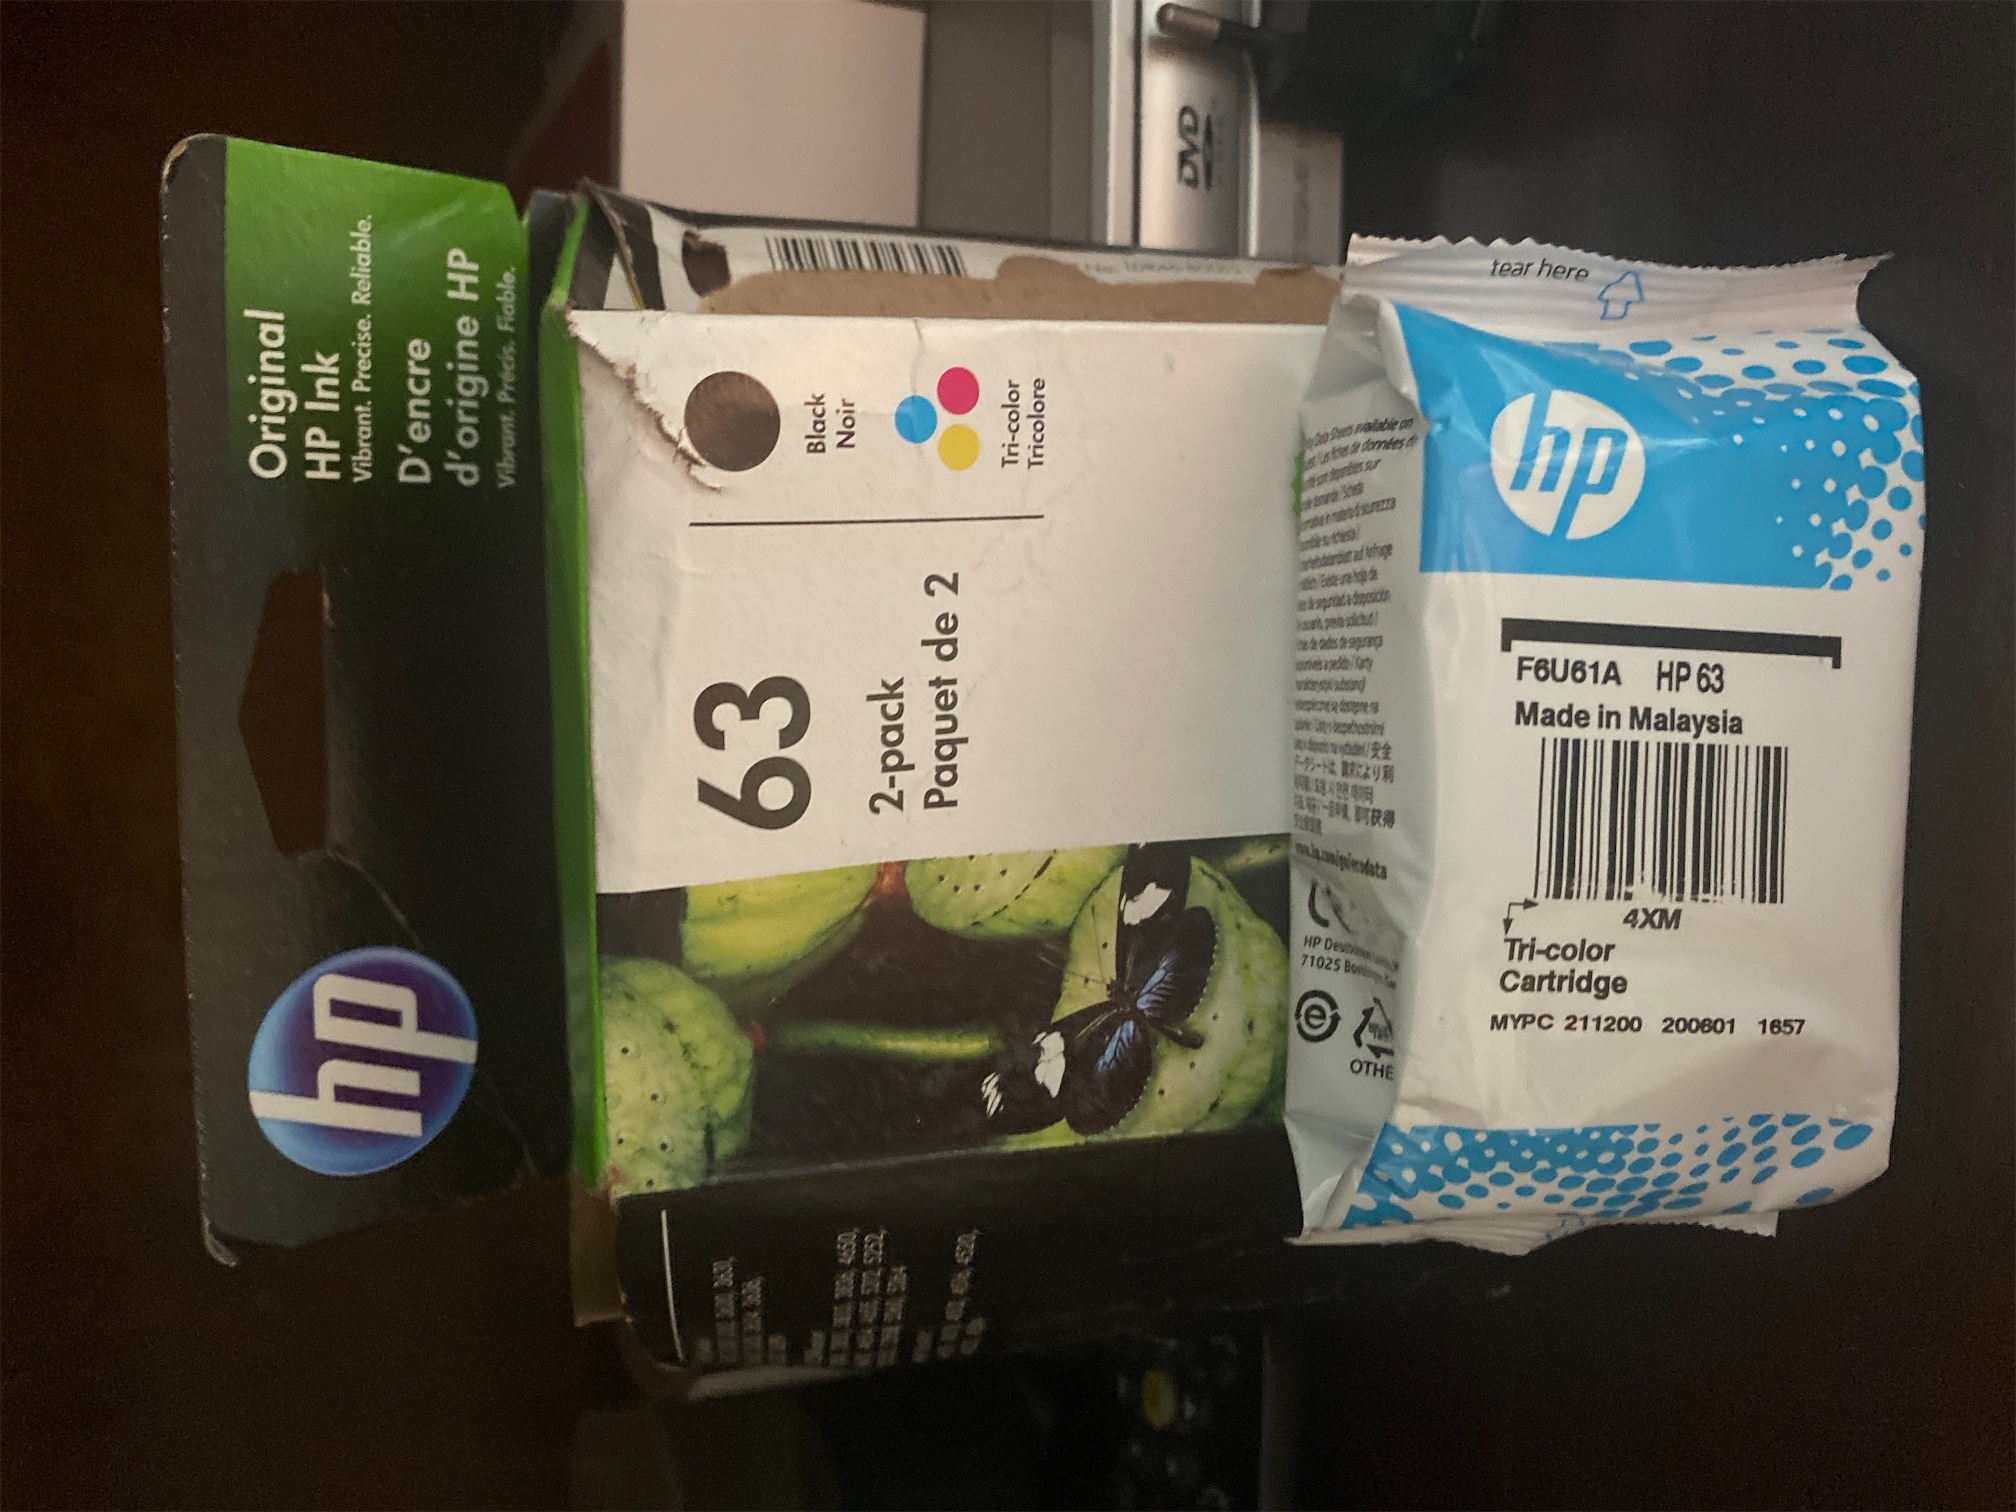 impresoras y scanners - Cartucho de Tinta Colores HP63